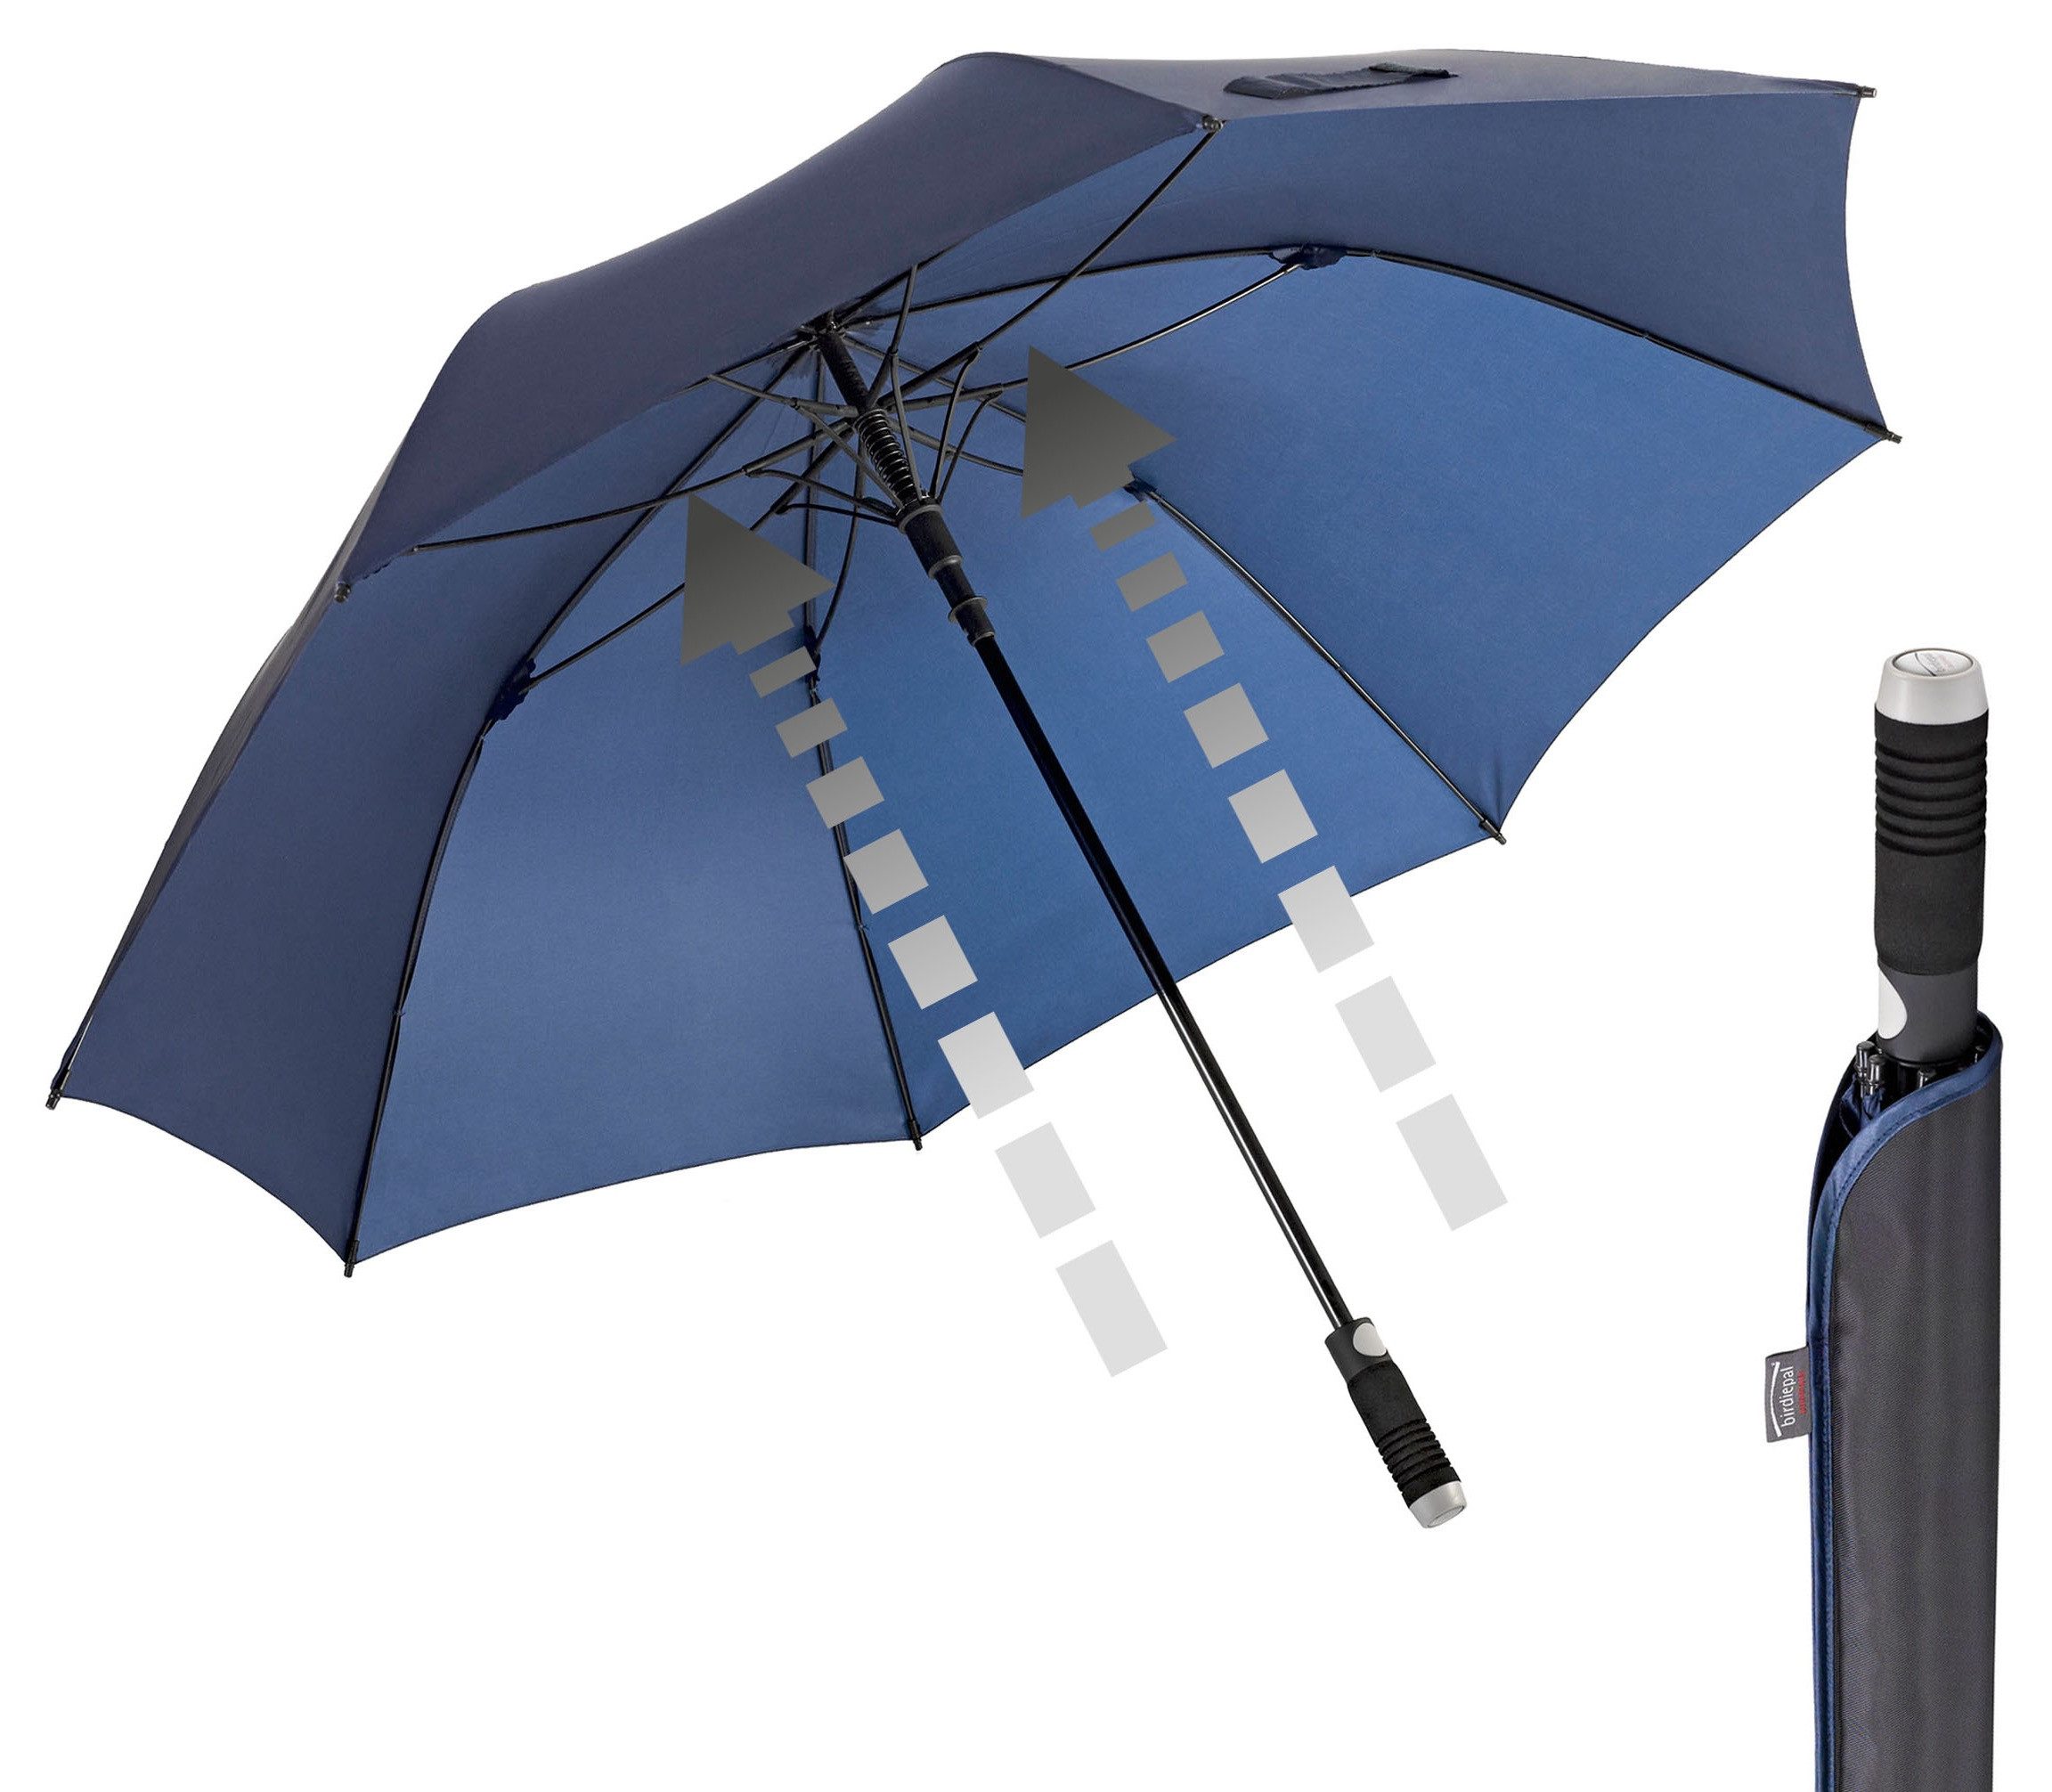 EuroSCHIRM® Partnerschirm birdiepal® Automatic, marineblau, Regenschirm für Zwei, mit extra großem Dach, Automatik